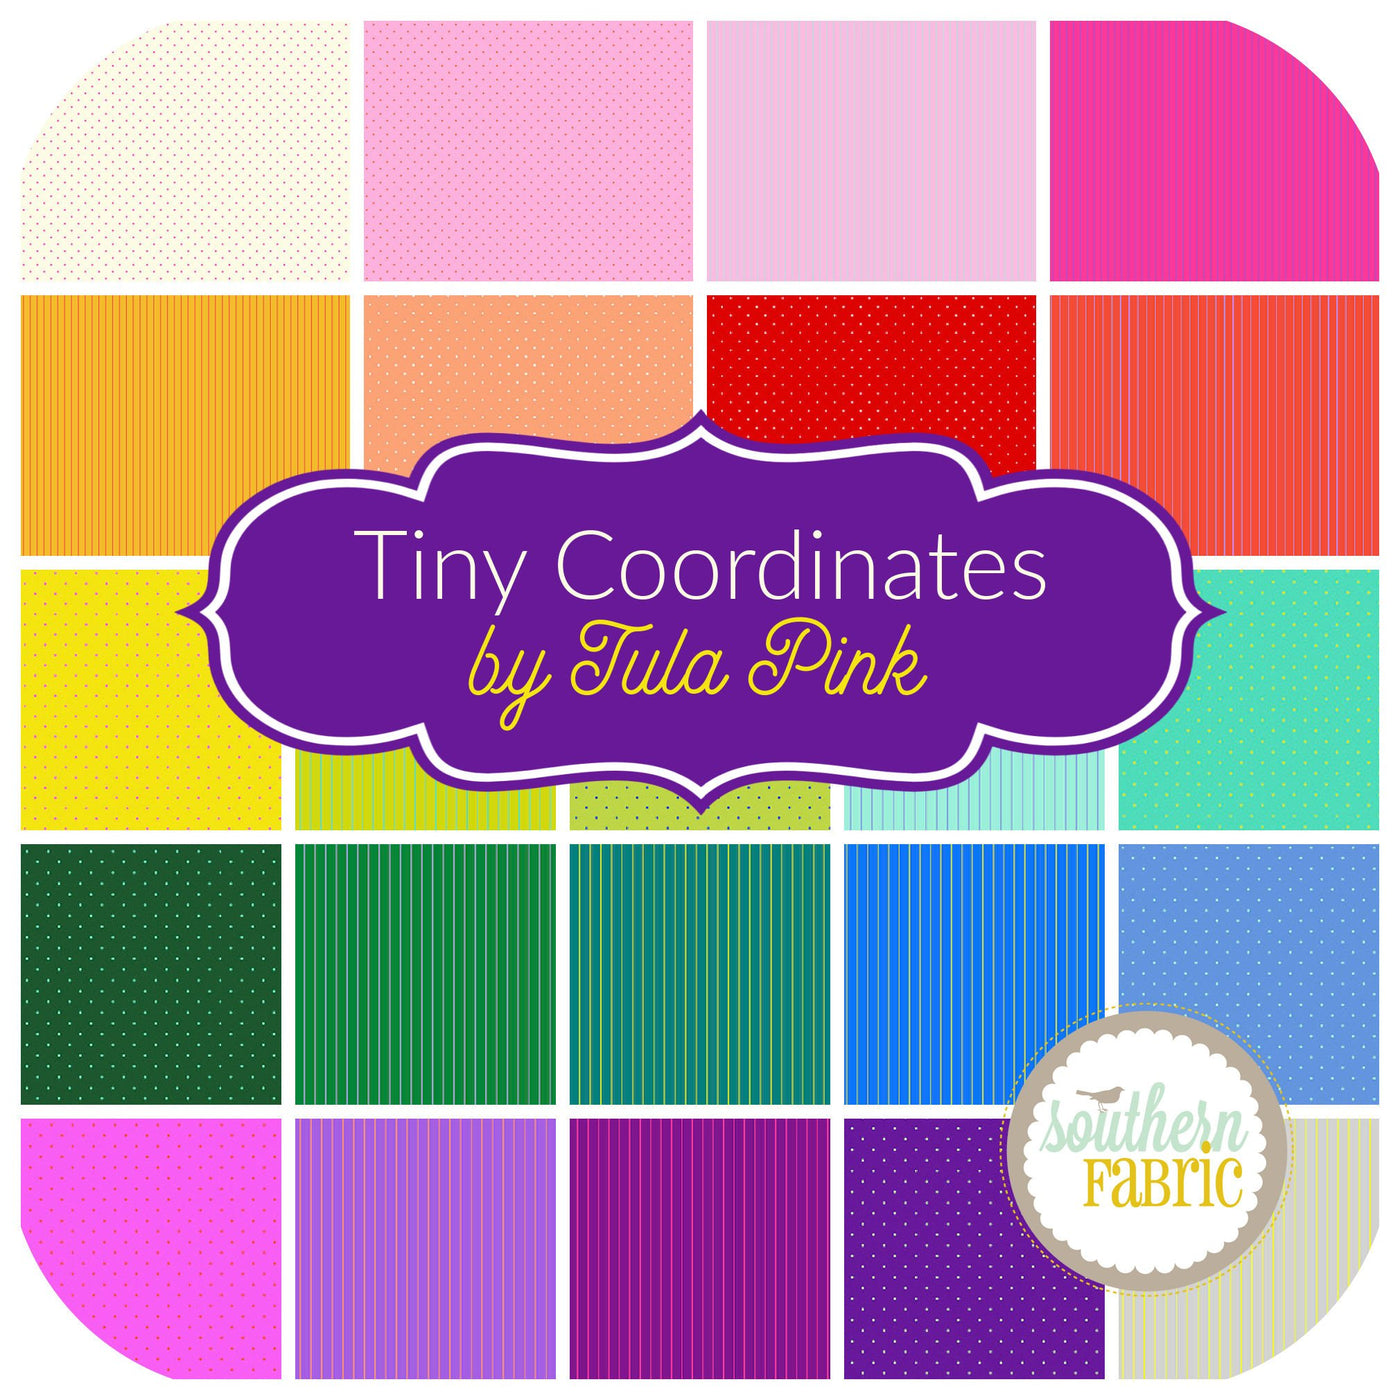 Tiny Coordinates Fat Quarter Bundle (24 pcs) by Tula Pink for Free Spirit (FB4FQTP.TINYCOOR)